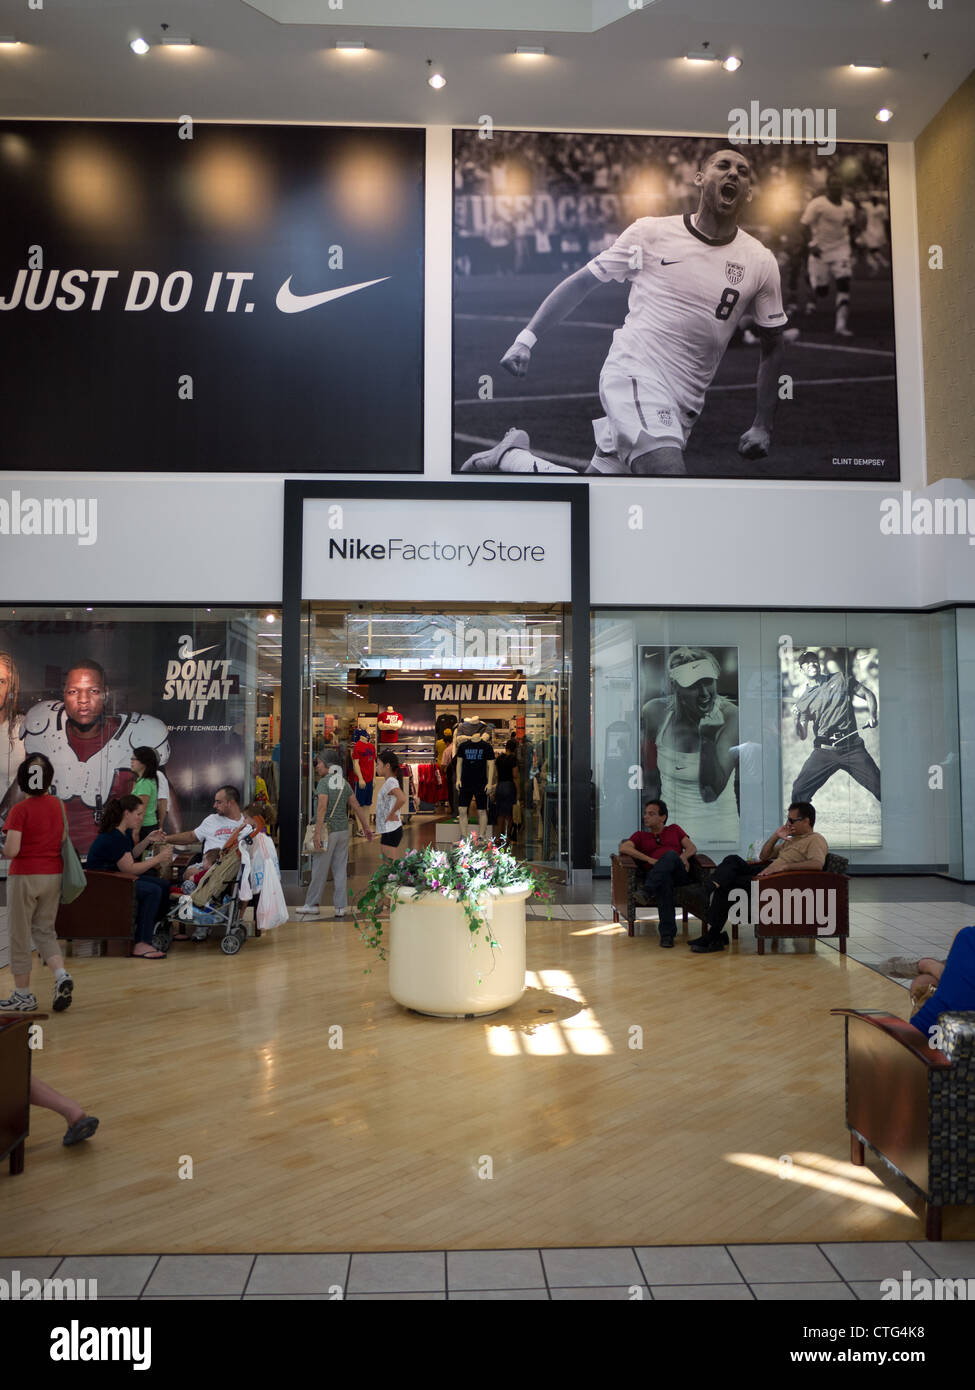 Nike factory store ingresso all'interno di Centro shopping Foto Stock